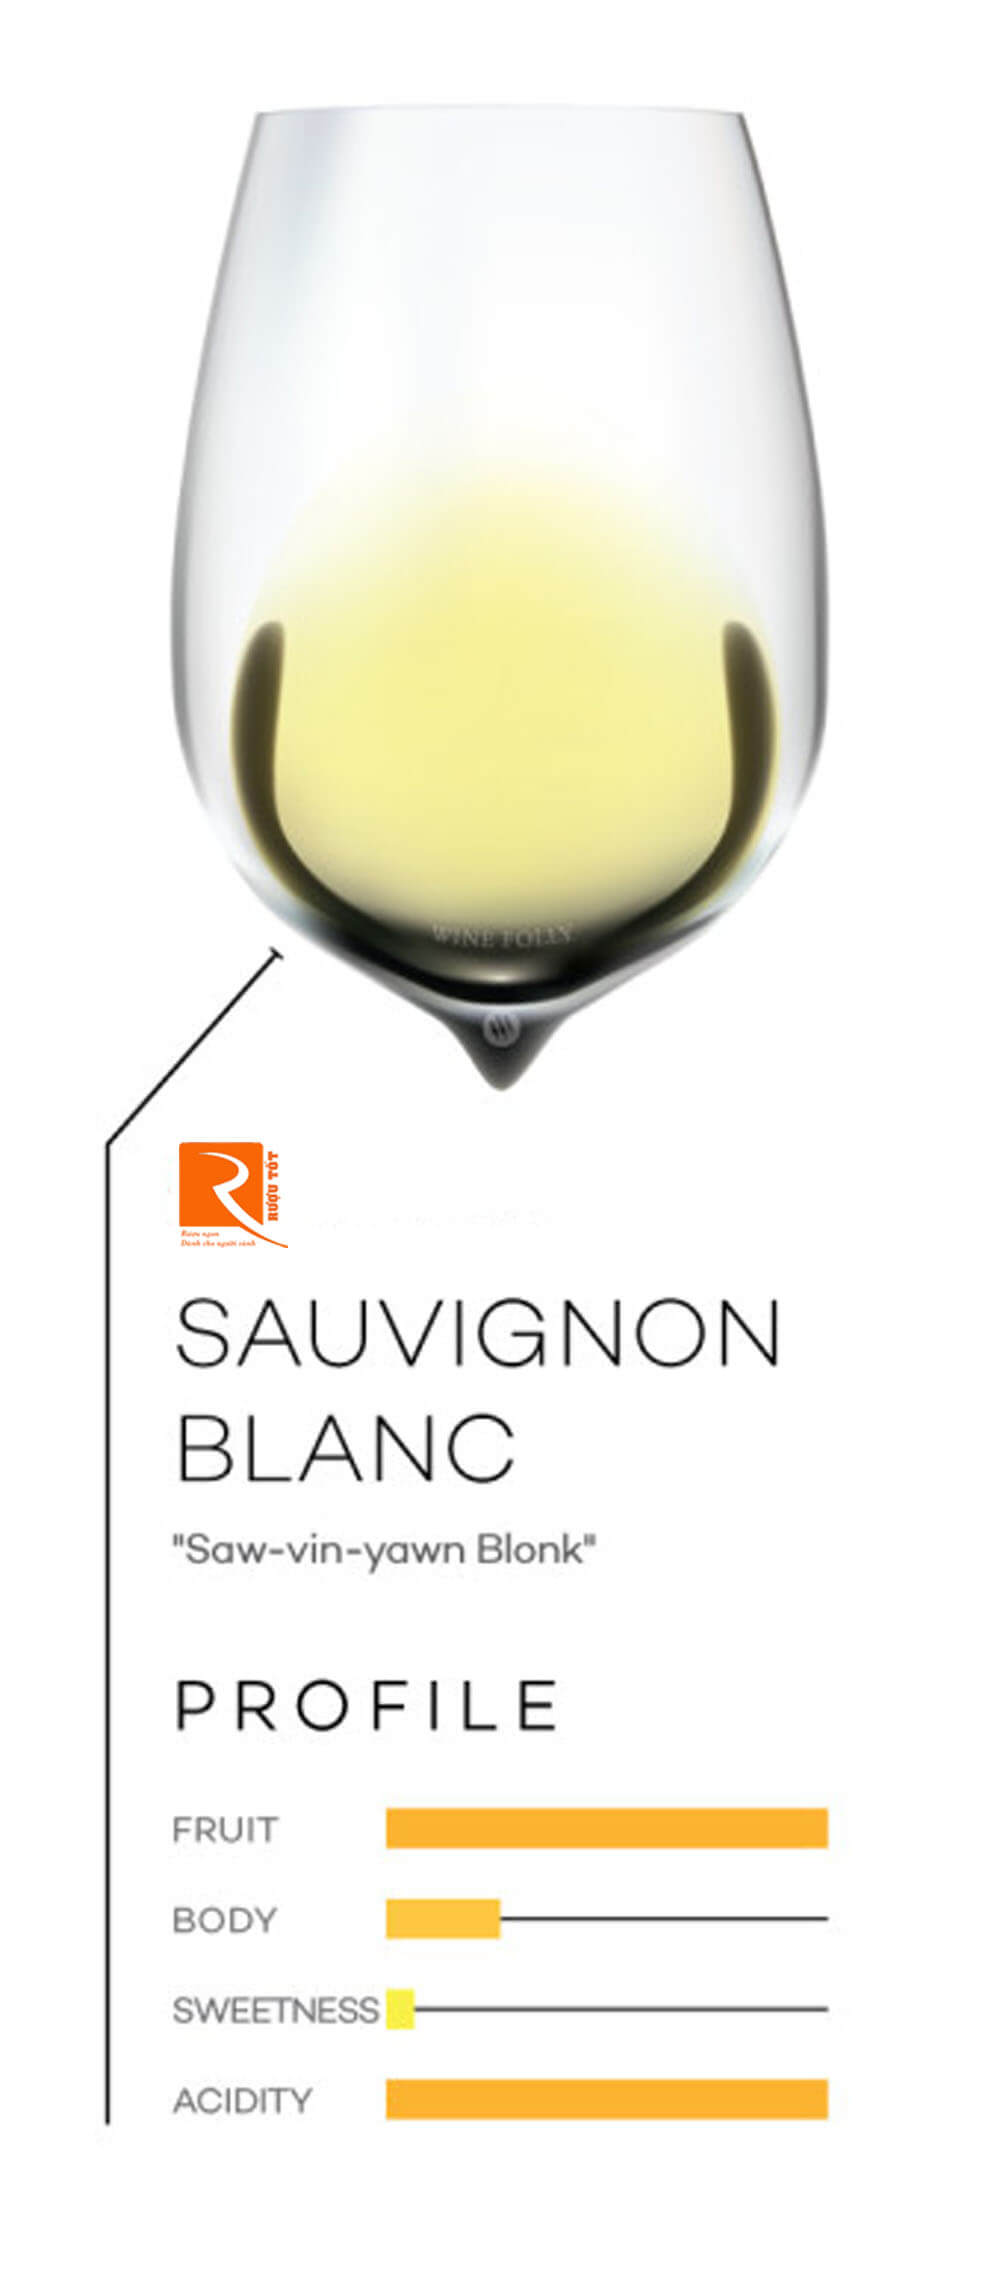 Có hơn 10 quốc gia chuyên về Sauvignon Blanc và mỗi khu vực mang đến một hương vị độc đáo